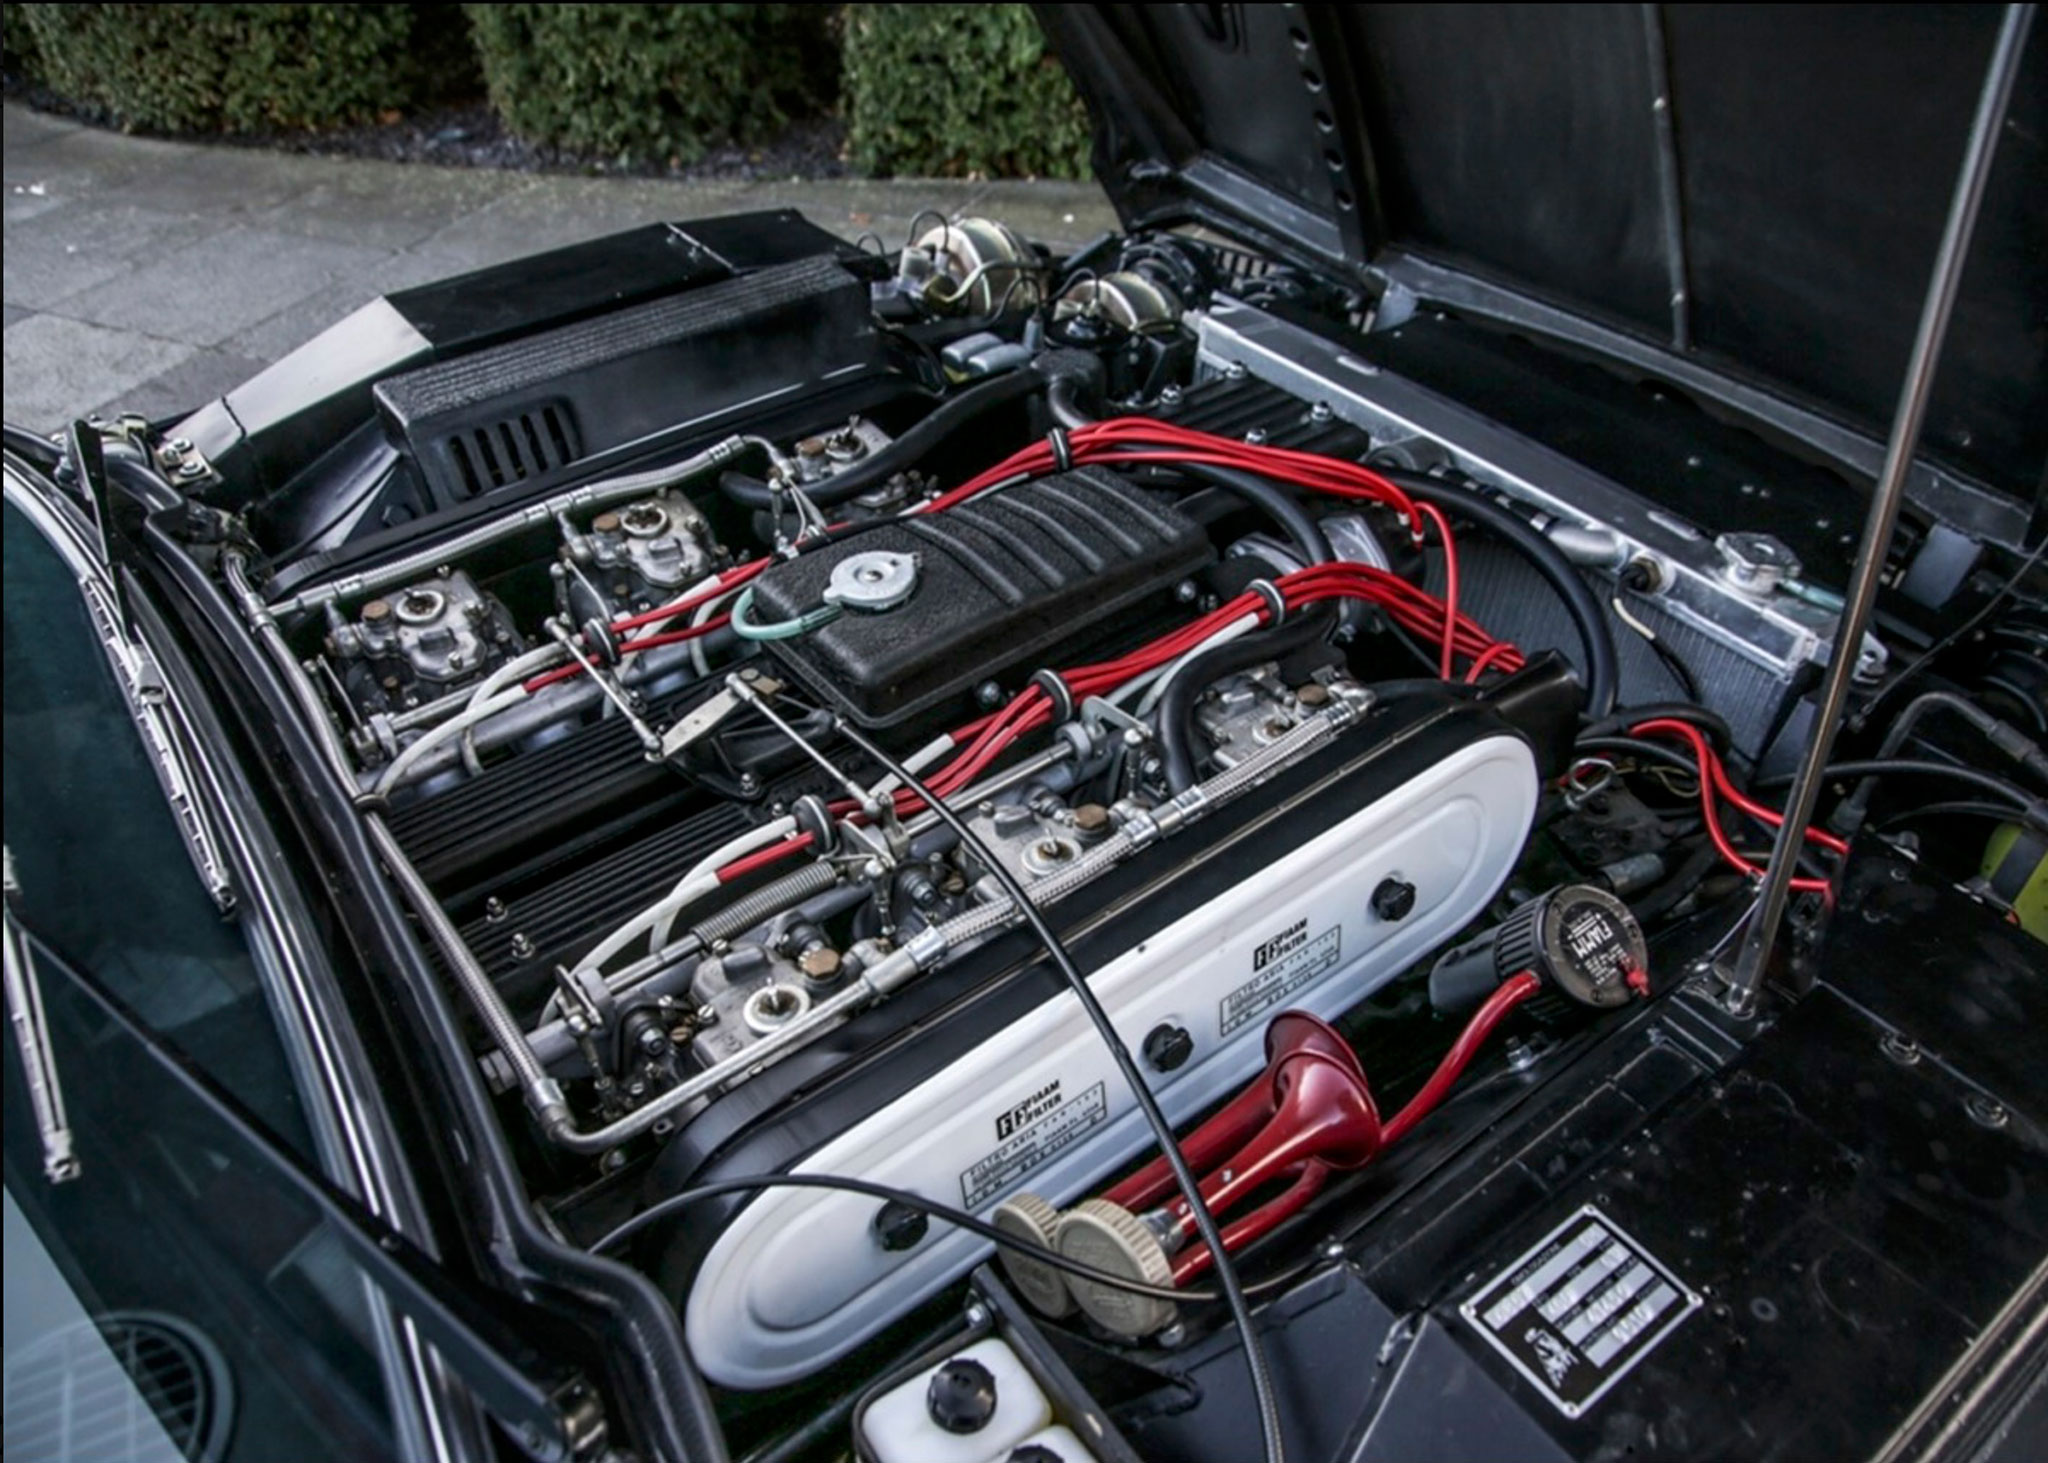 1976 Lamborghini Espada Série 3 moteur V12 4 litres 6 carburateurs double corps 325 chevaux - Ascot Racecourse avril 2021.